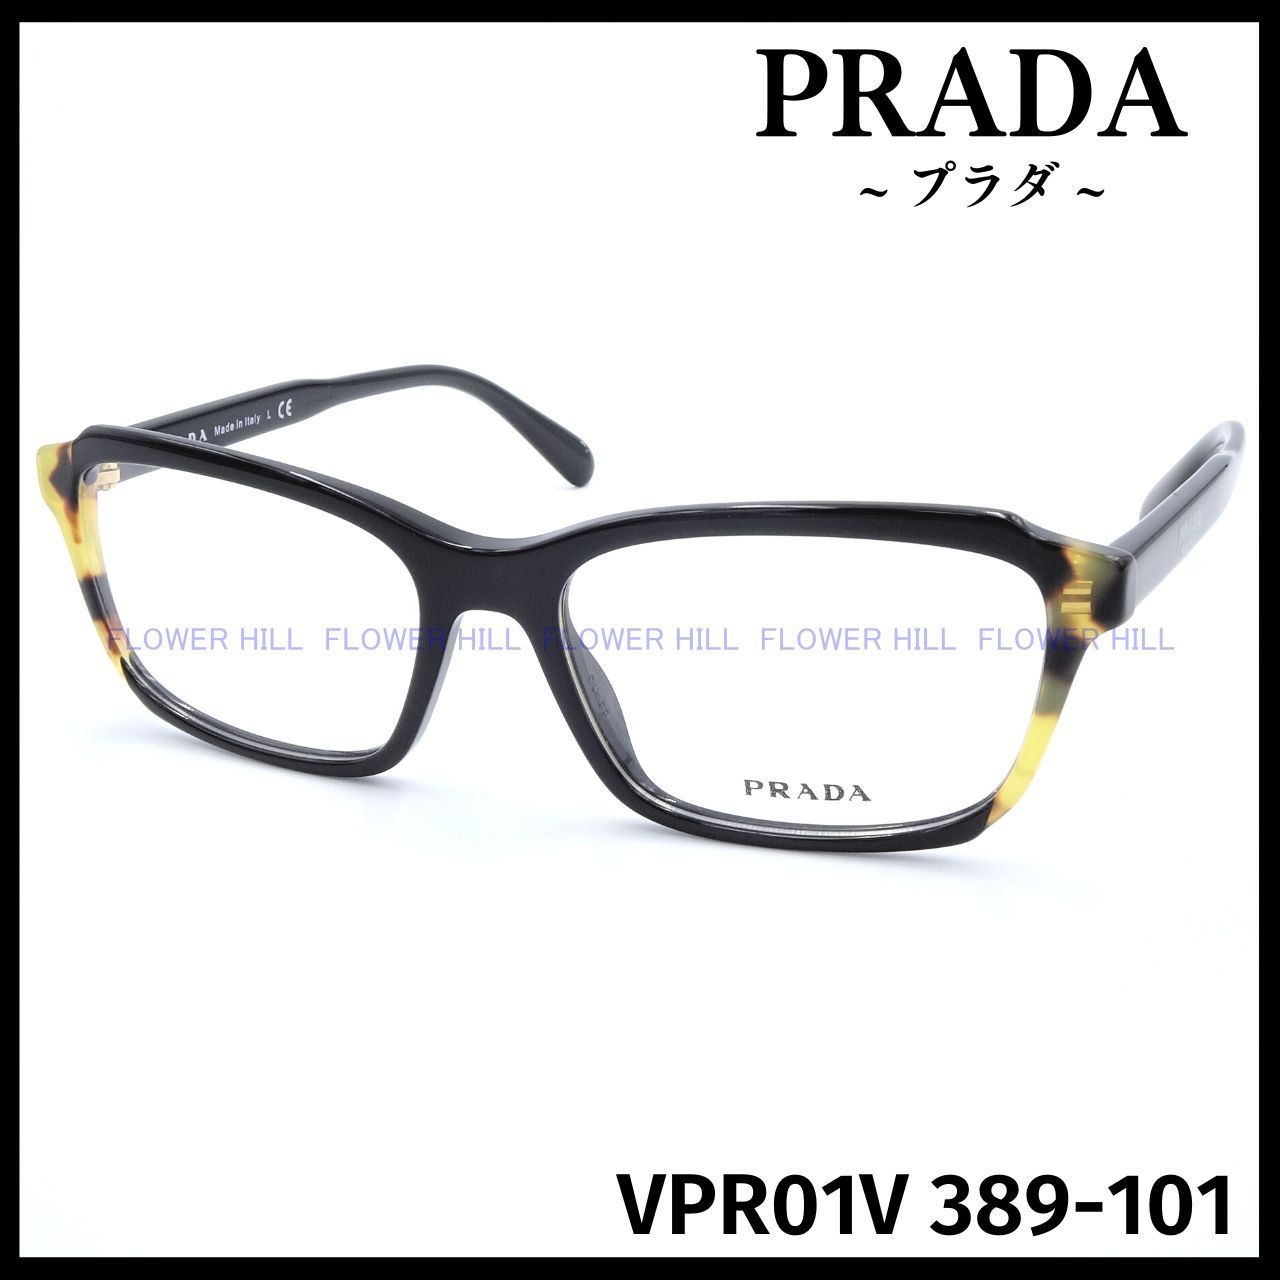 PRADA プラダ メガネ フレーム VPR01V 389 ブラック/ハバナ イタリア製